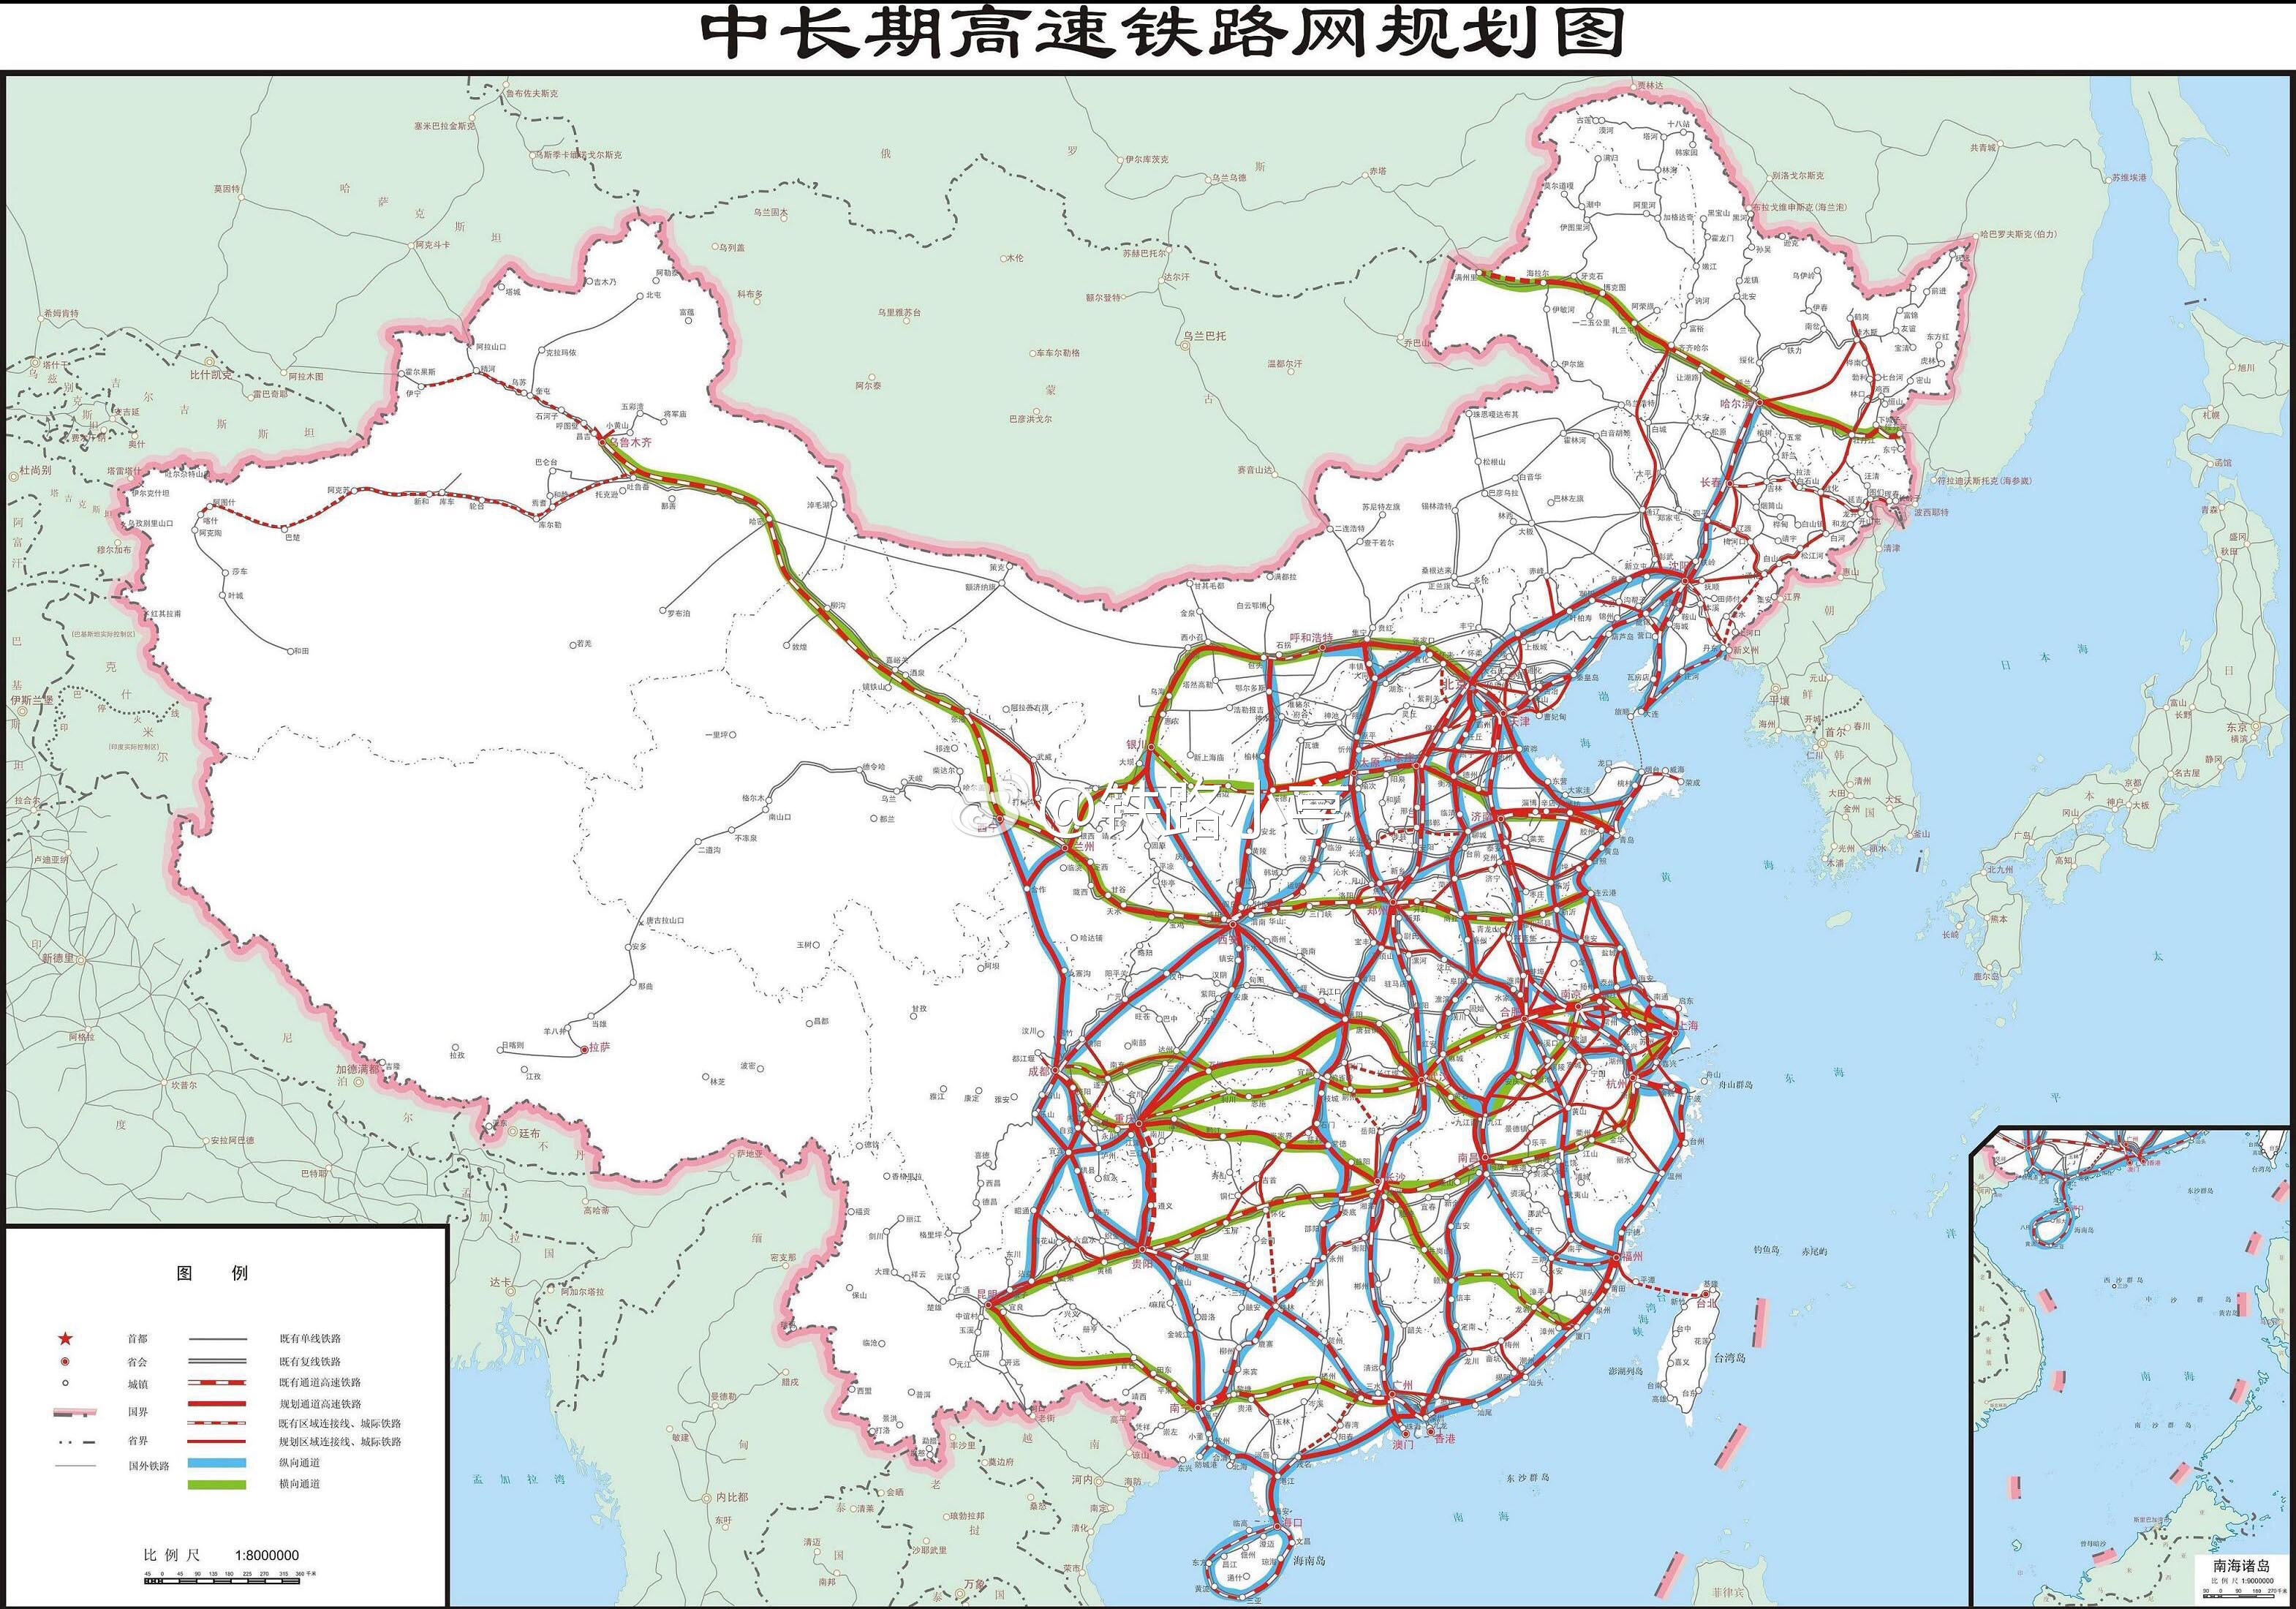 2016版中国中长期高速铁路网规划图 图片来源